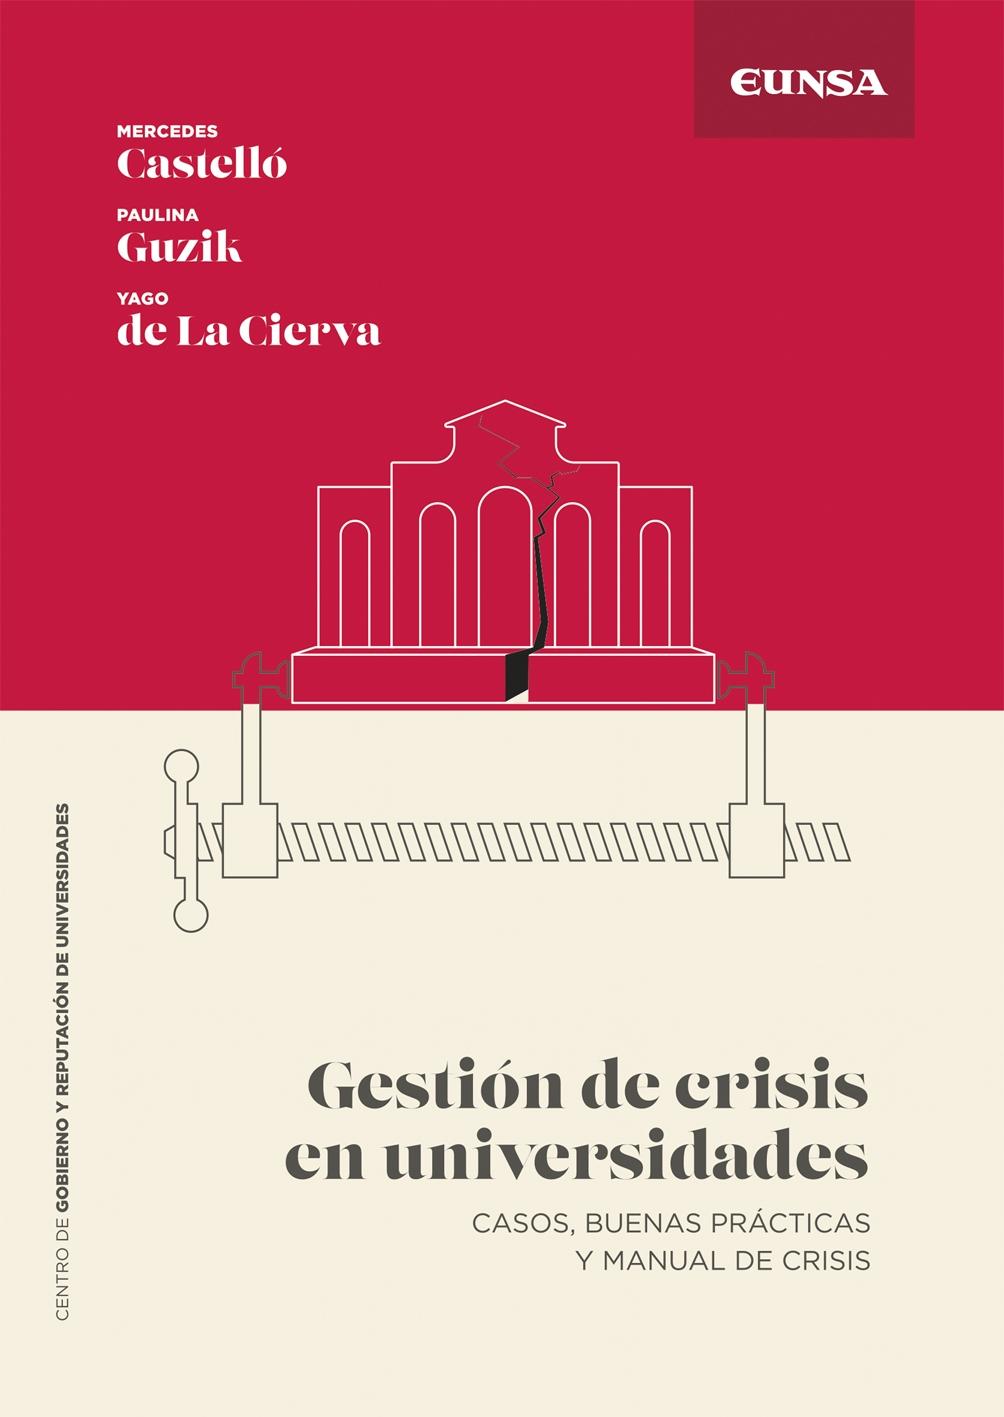 Gestión de crisis en universidades "Casos, buenas prácticas y manual de crisis"